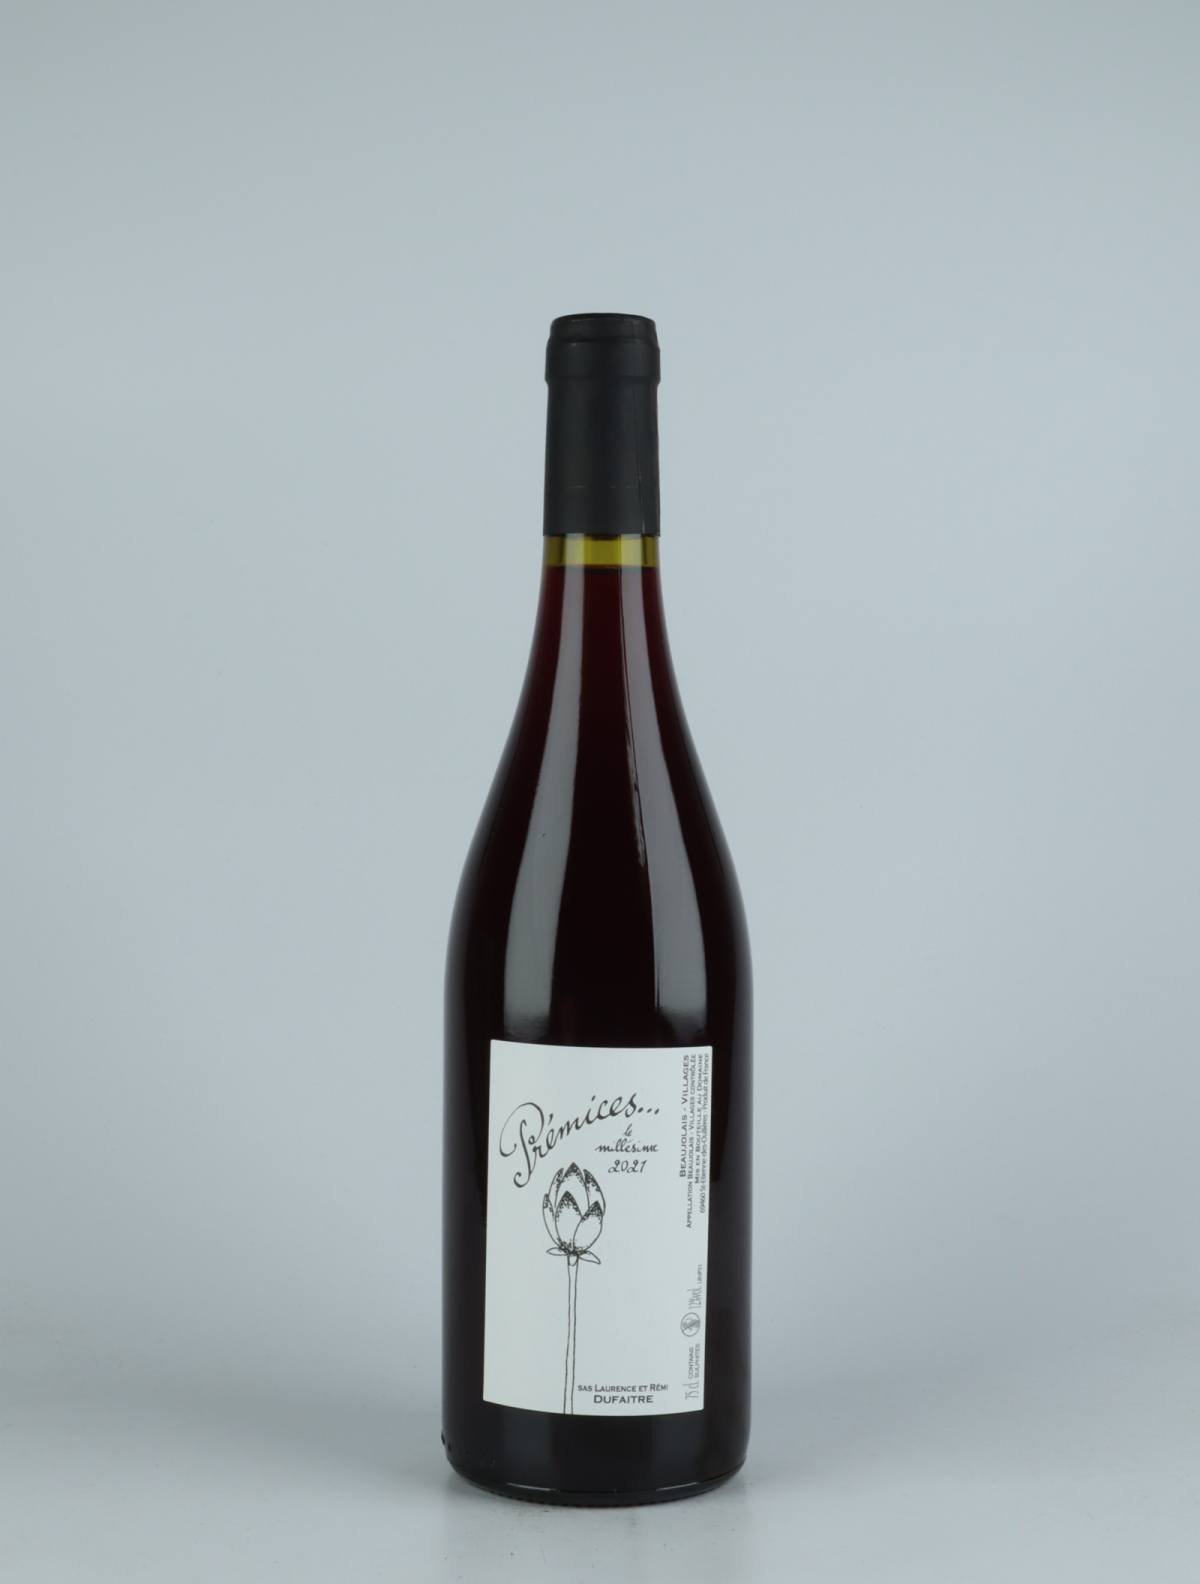 A bottle 2021 Beaujolais Villages - Prémices Red wine from Laurence & Rémi Dufaitre, Beaujolais in France